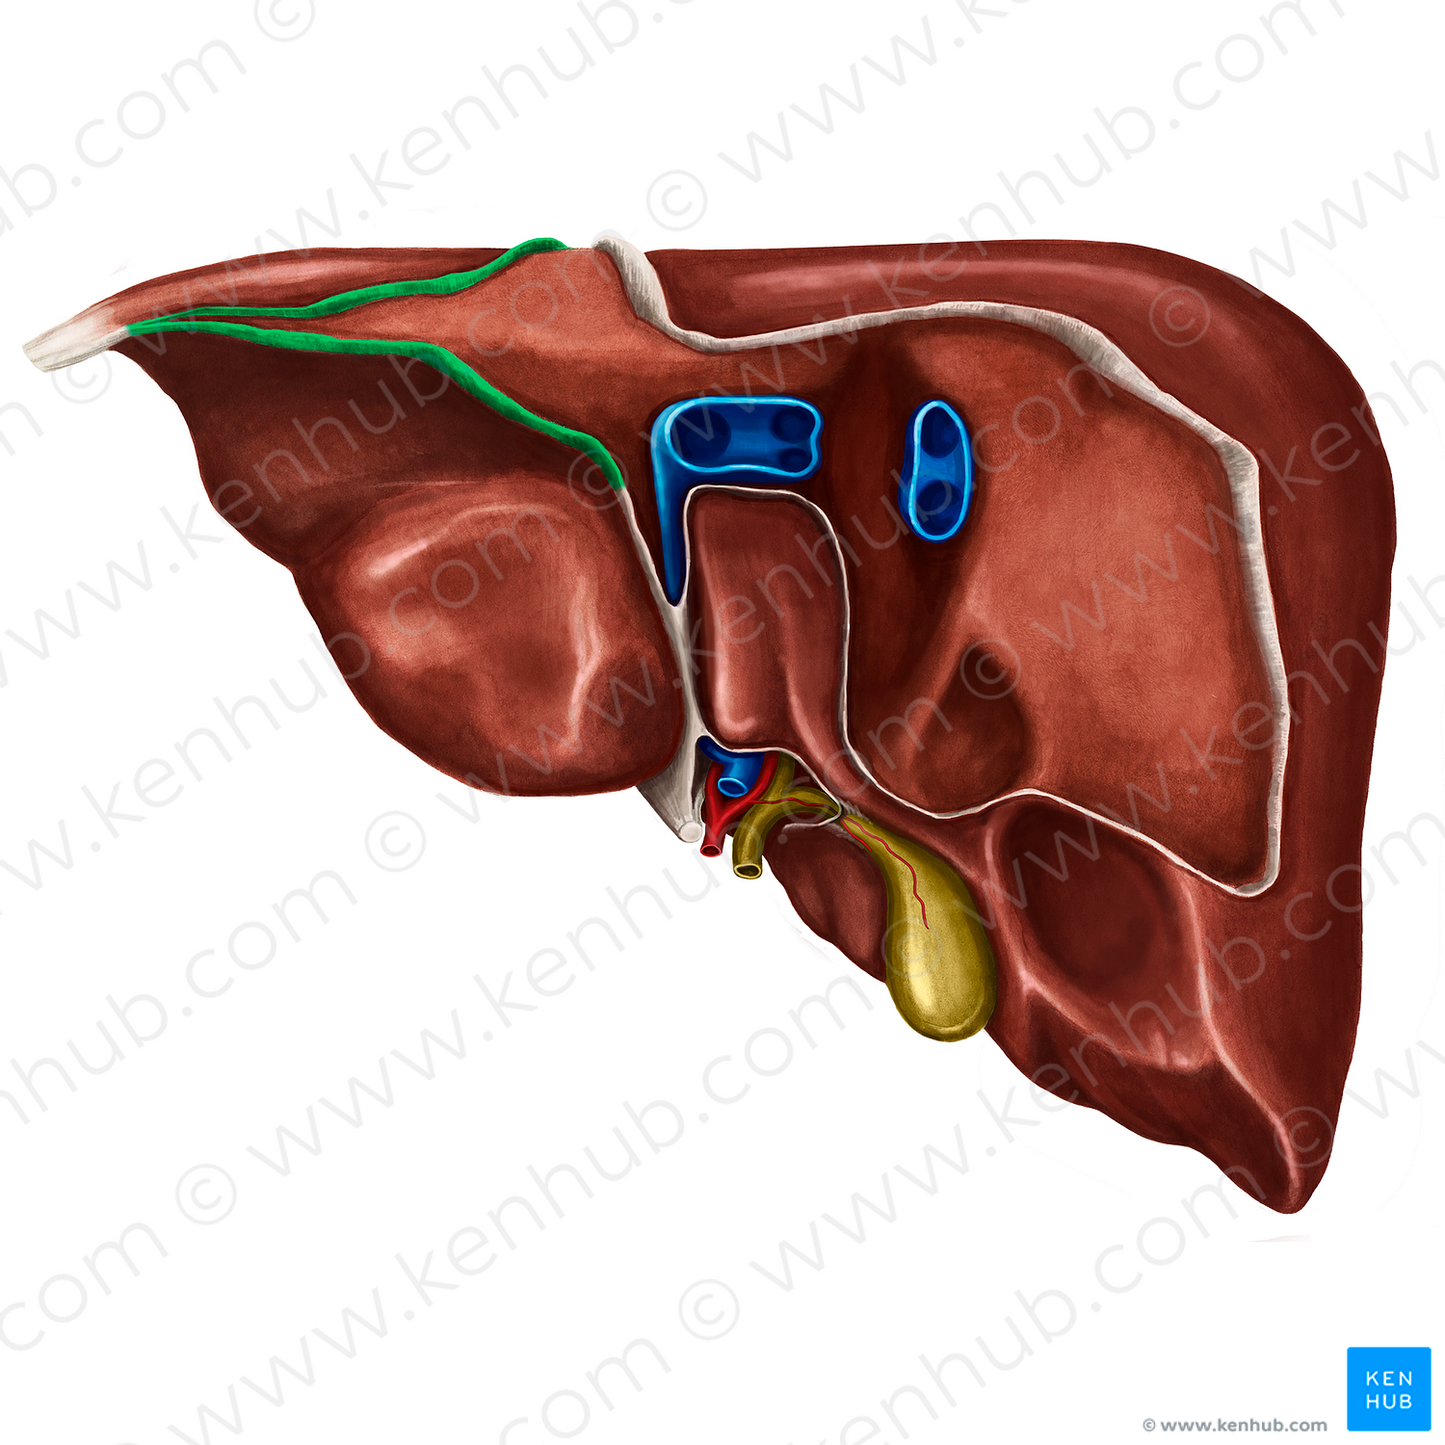 Left triangular ligament of liver (#4667)